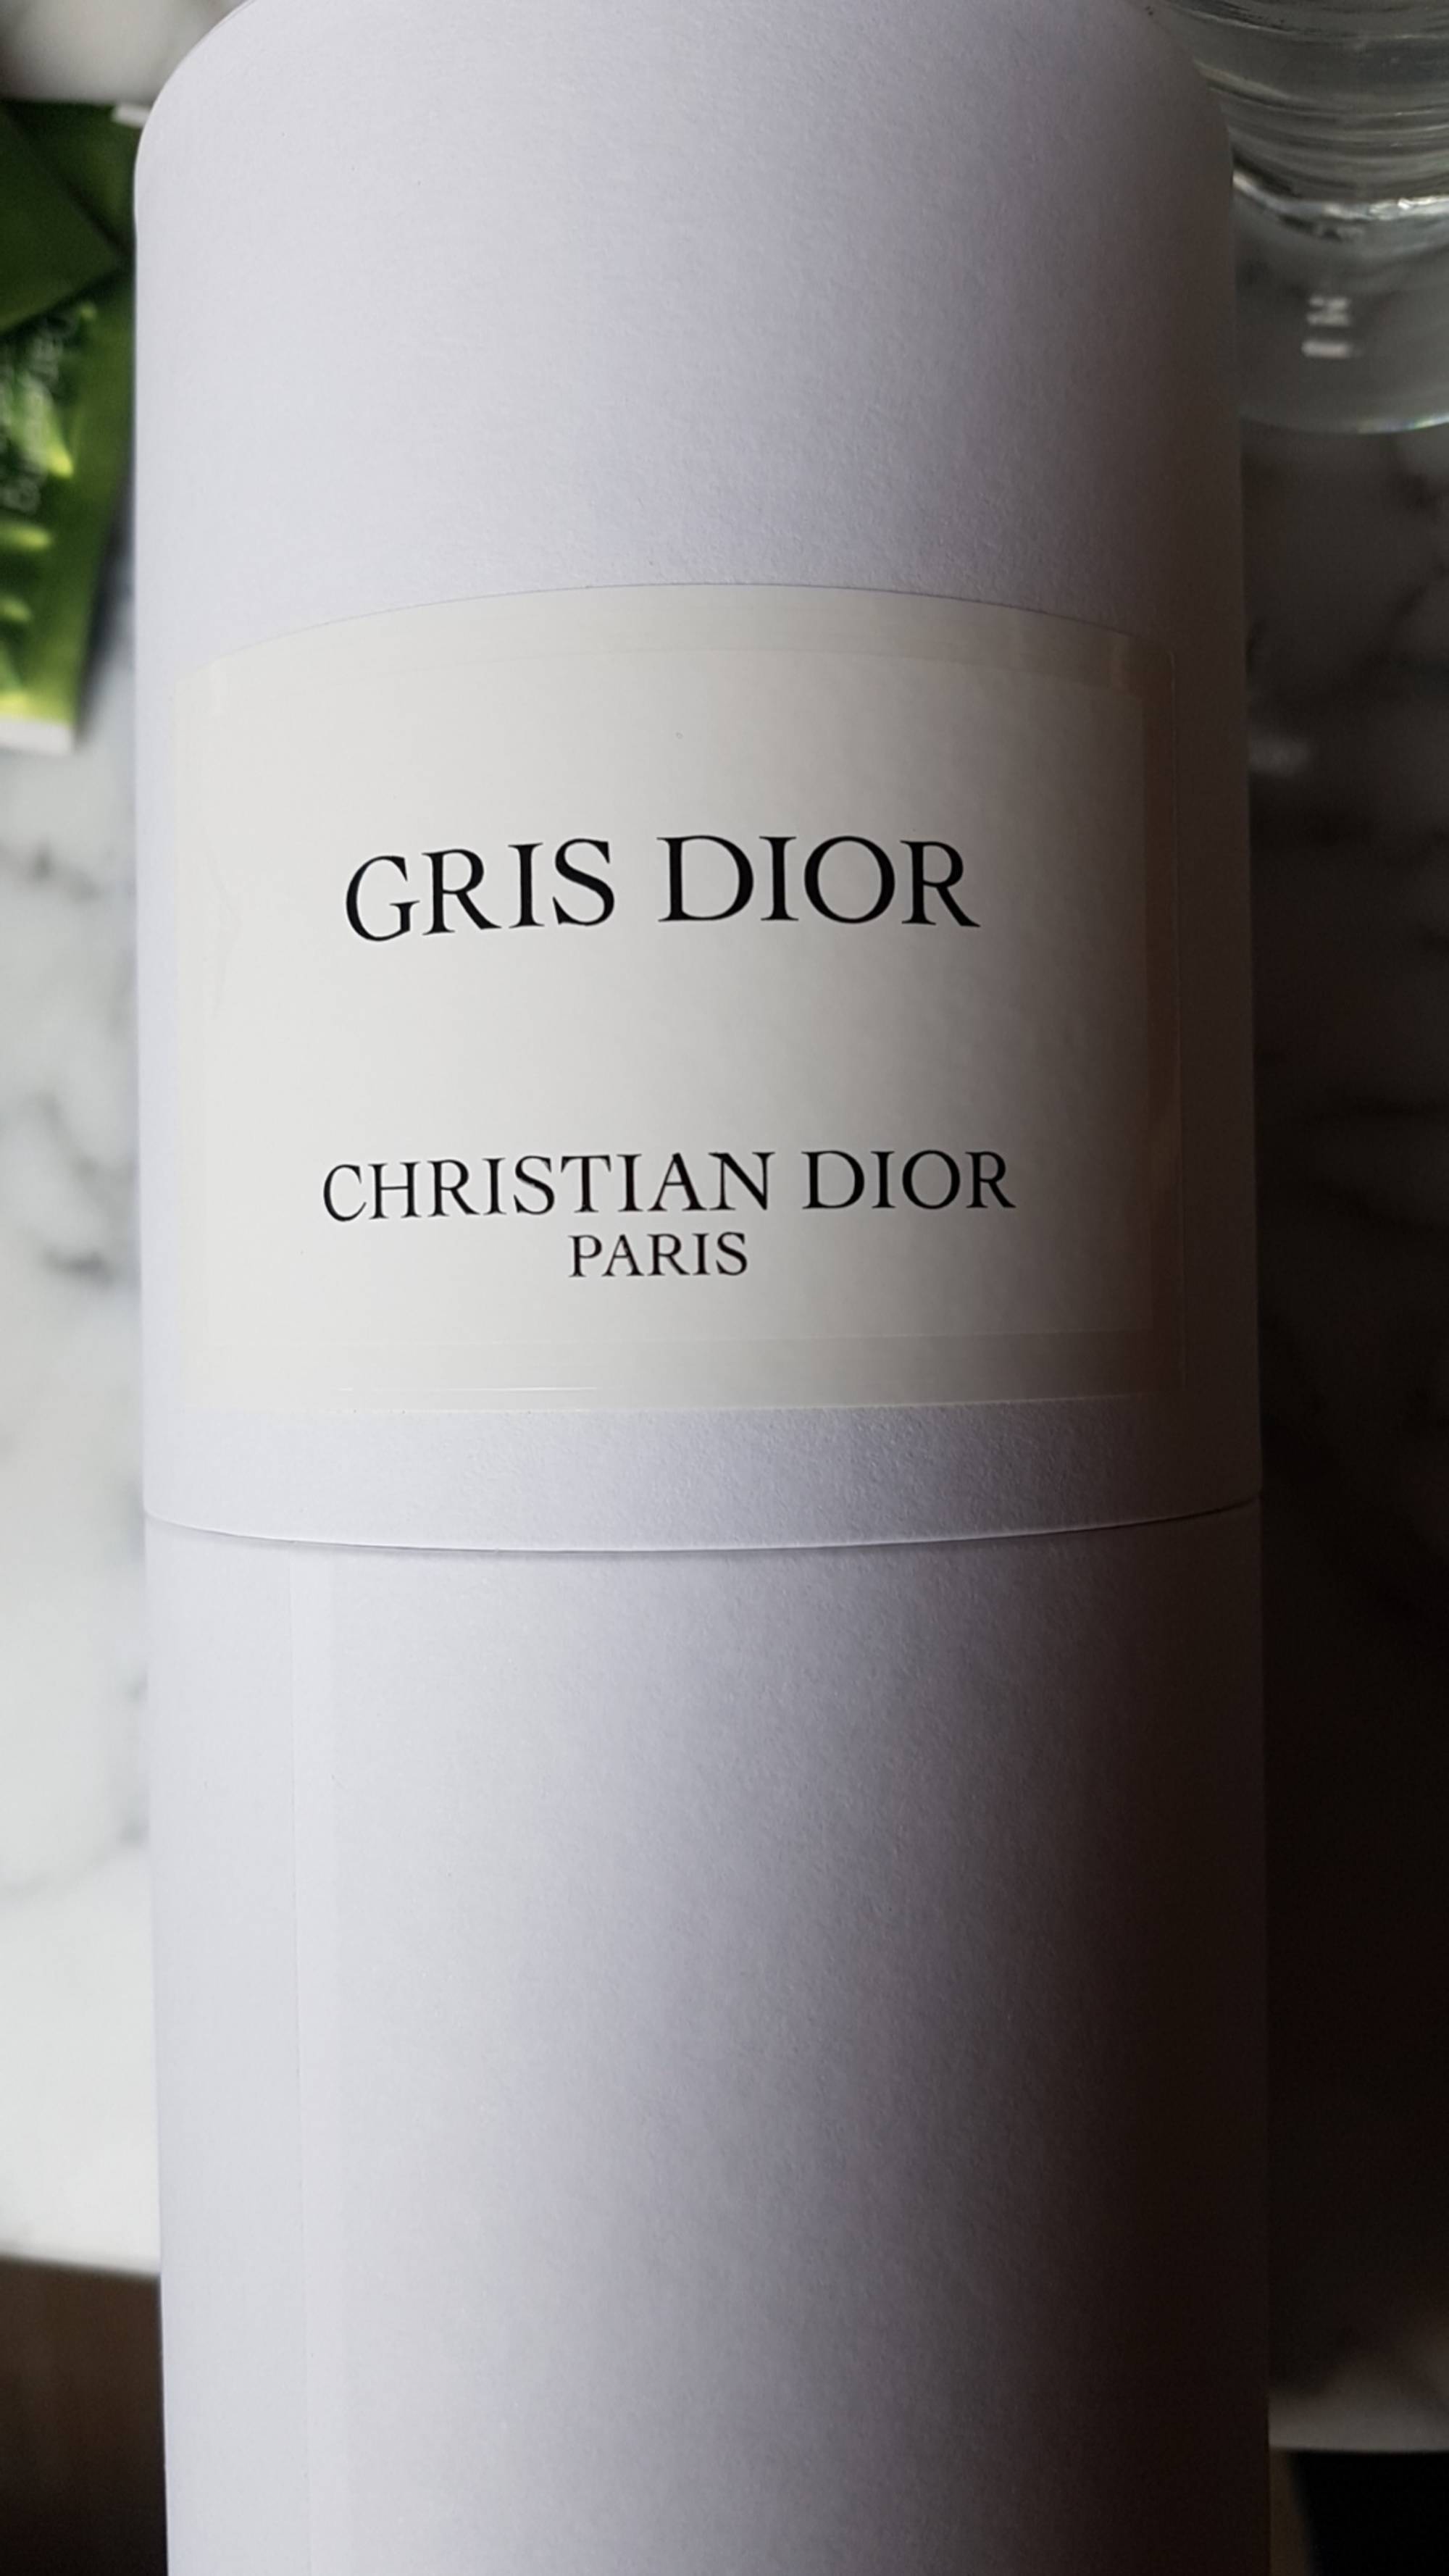 CHRISTIAN DIOR - Gris dior - Eau de parfum